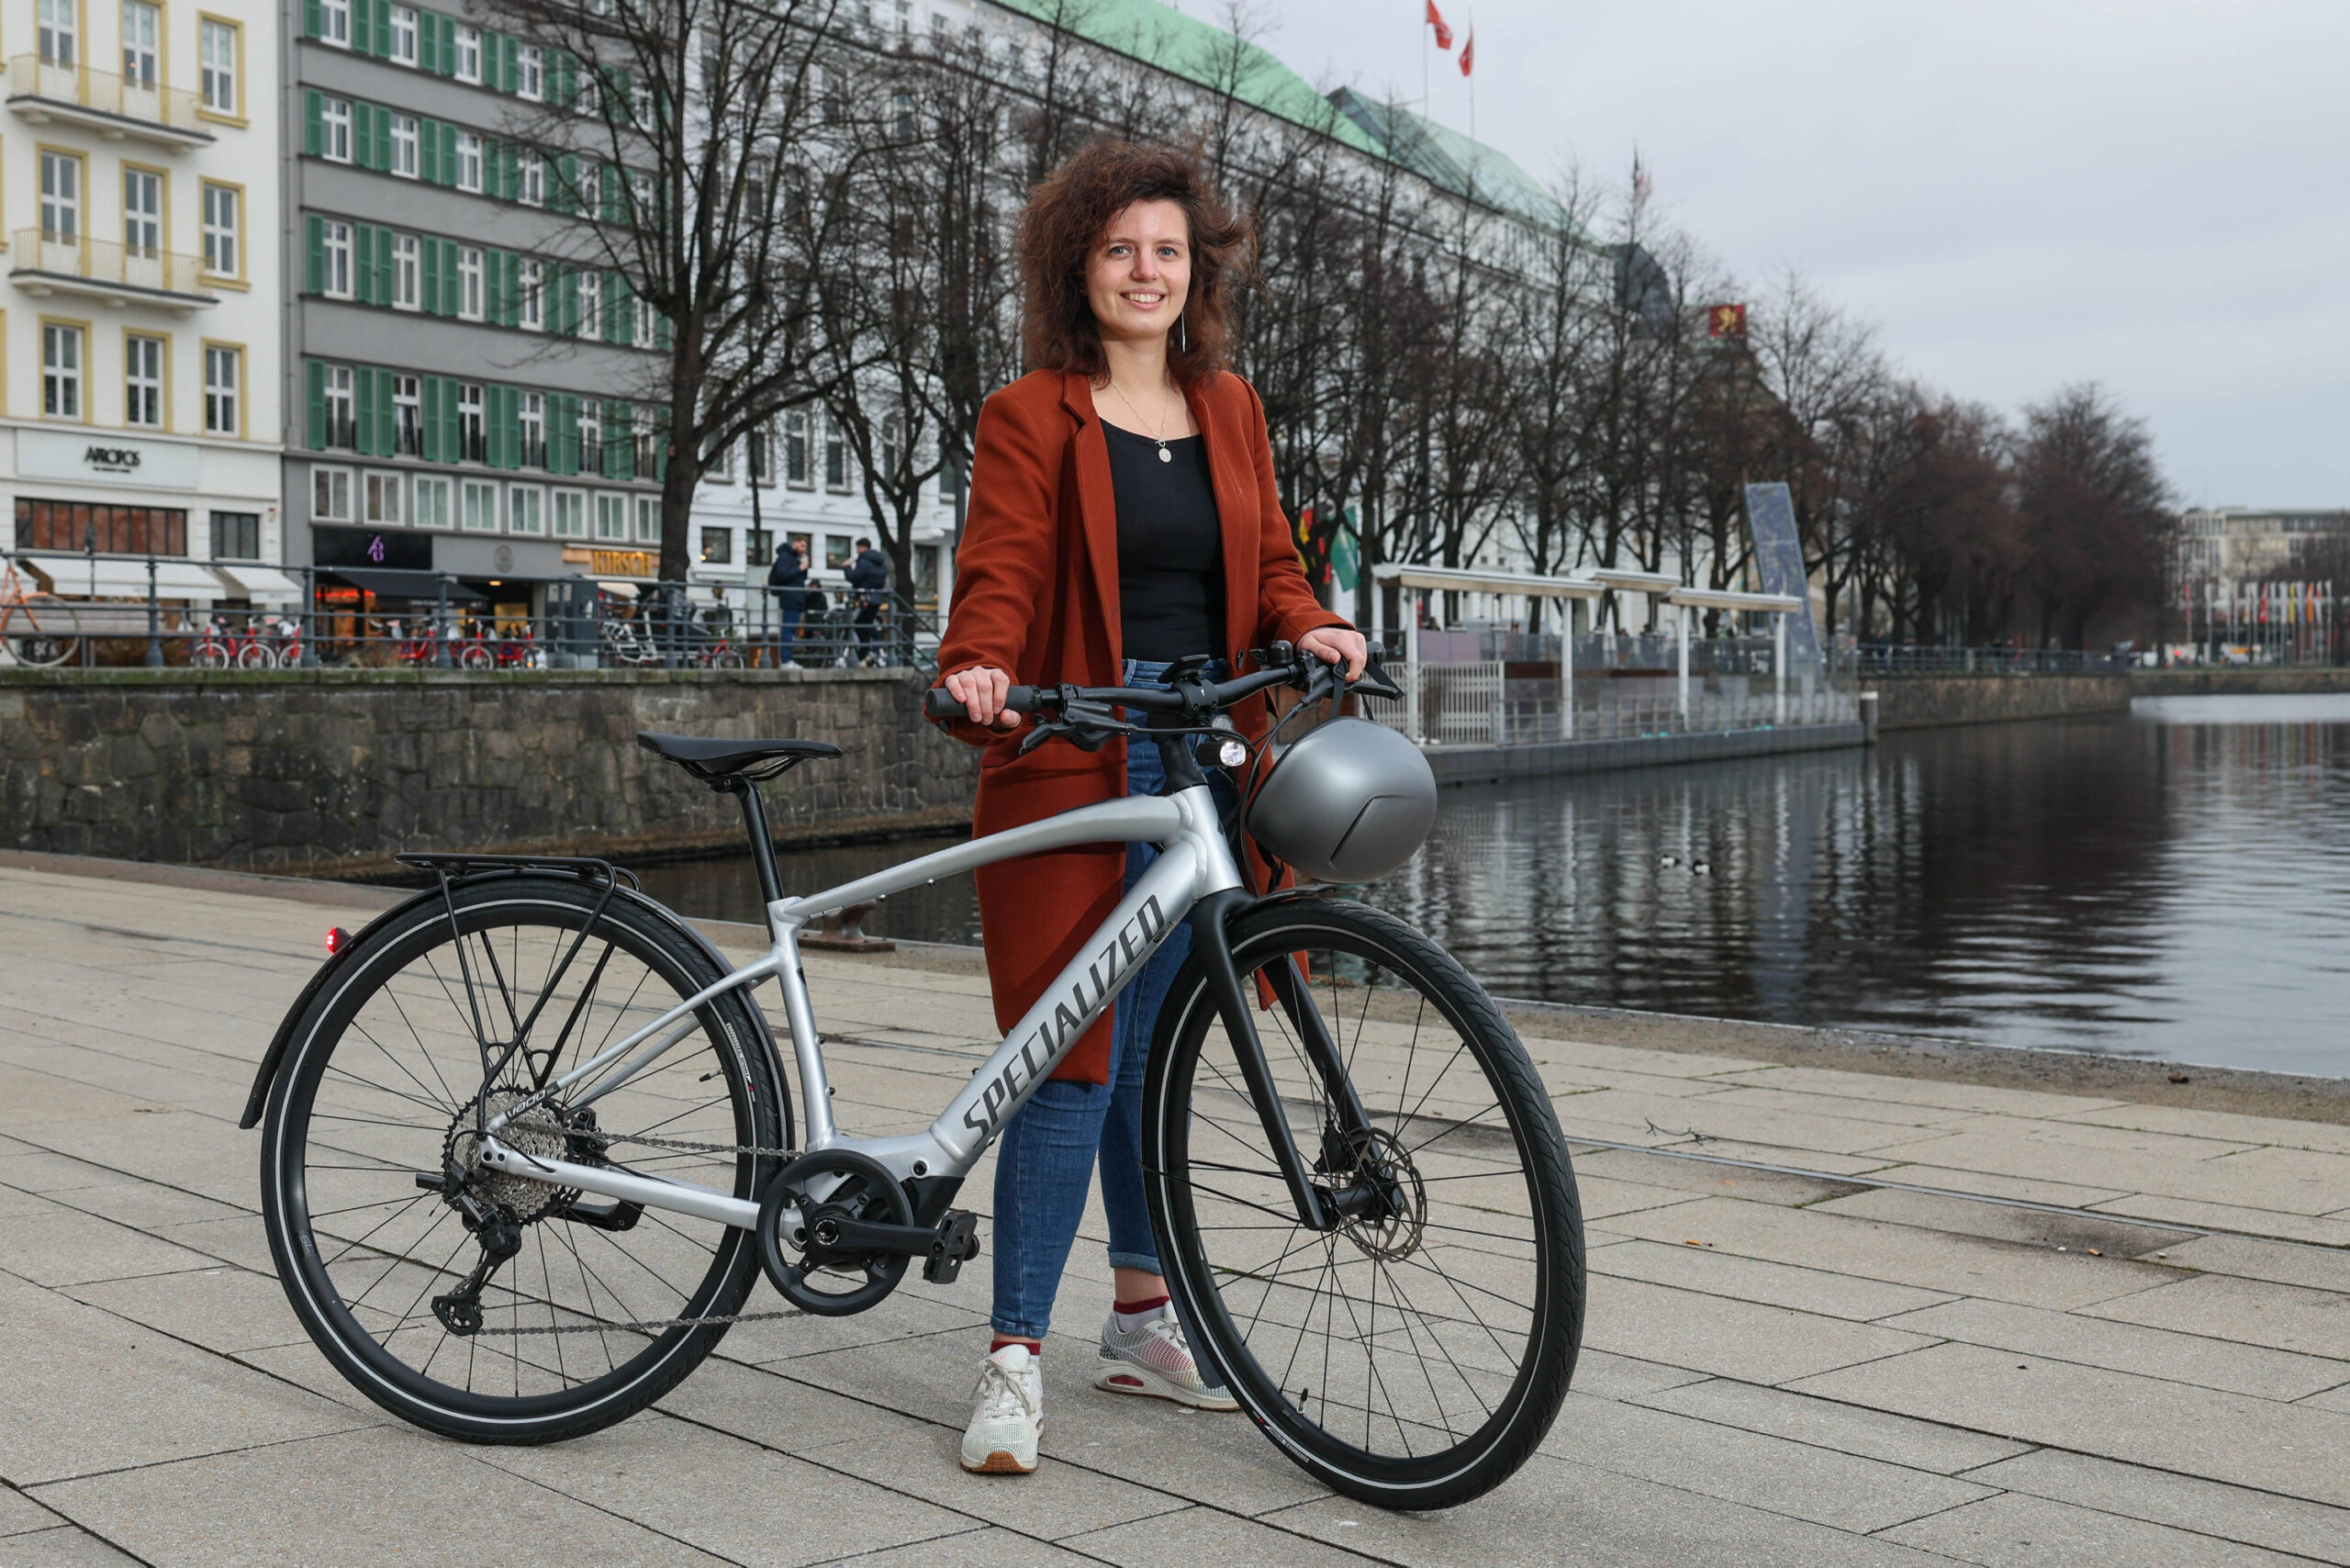 Die meistverkauften E-Bikes bei „Specialized“ sind die City-Räder. MOPO-Reporterin Annalena Barnickel hat eins davon ausprobiert.